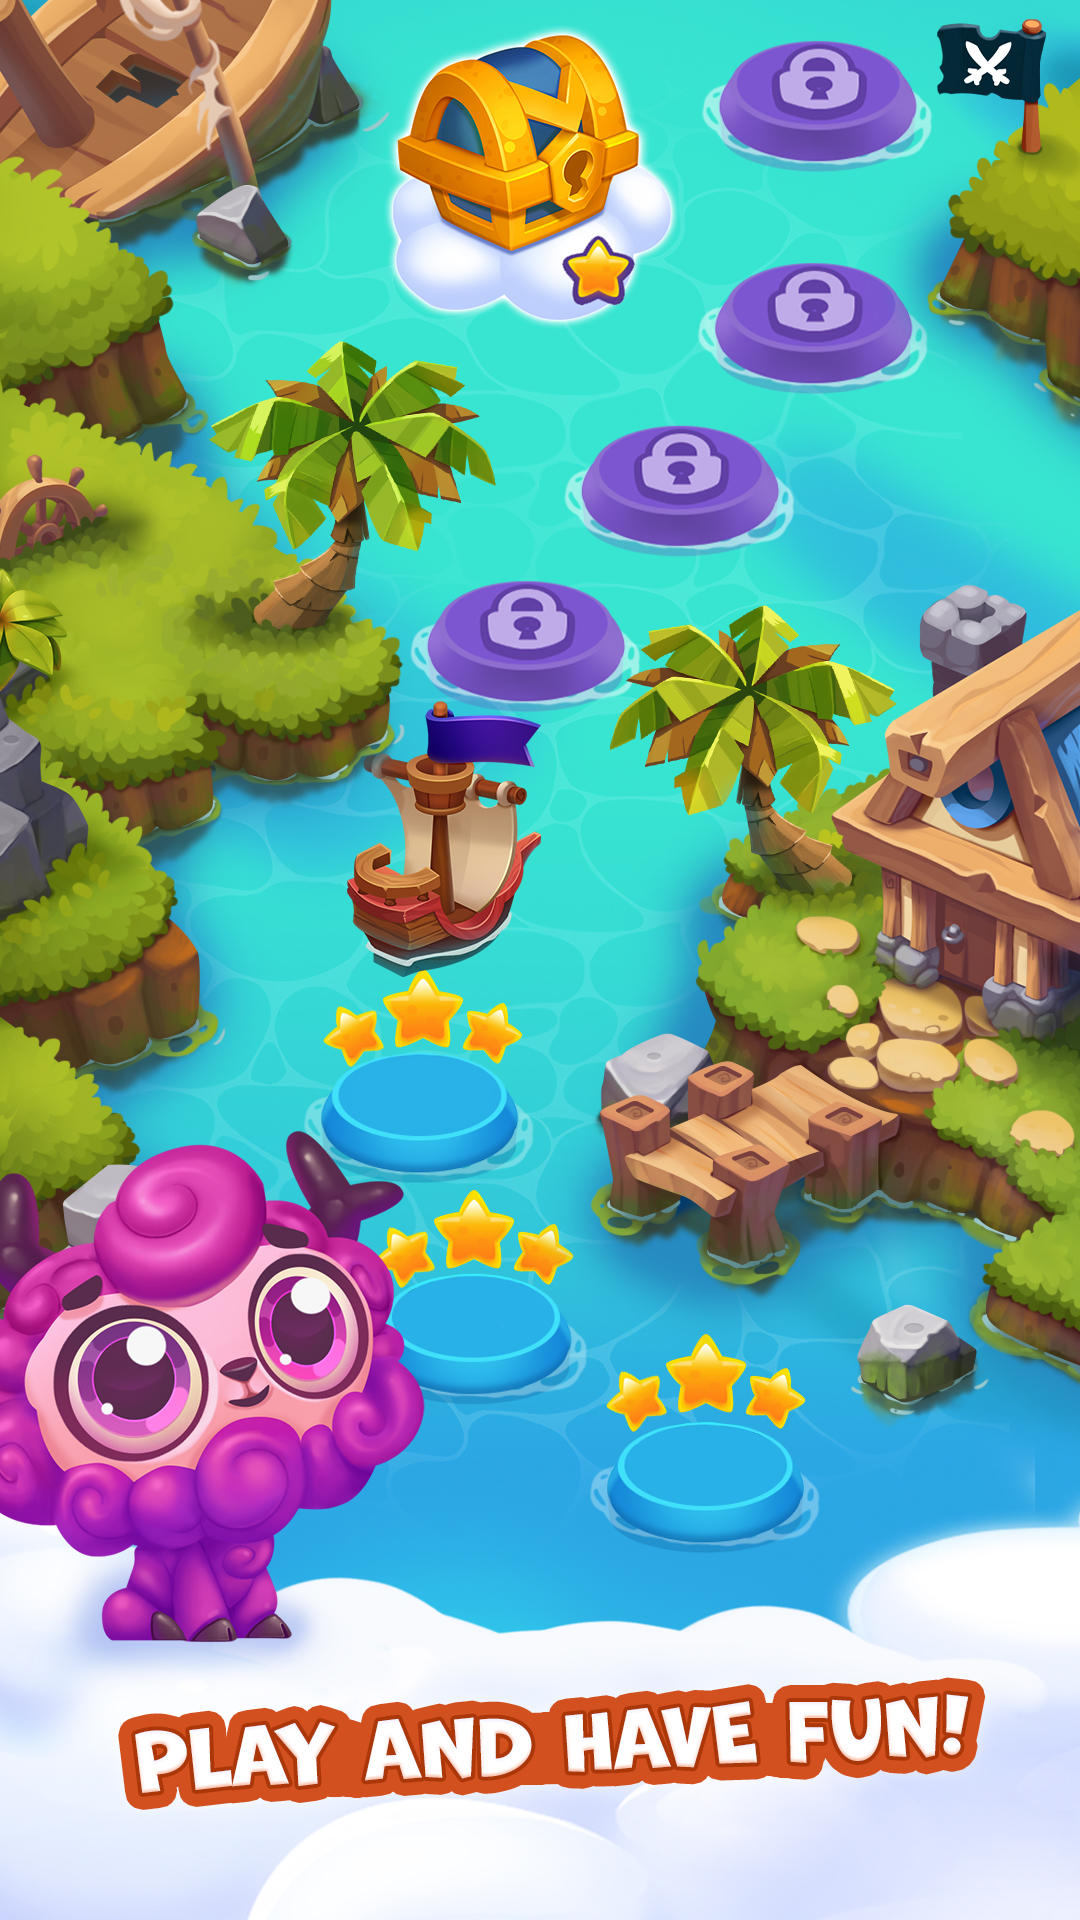 Pirate Treasures: Jewel & Gems screenshot game